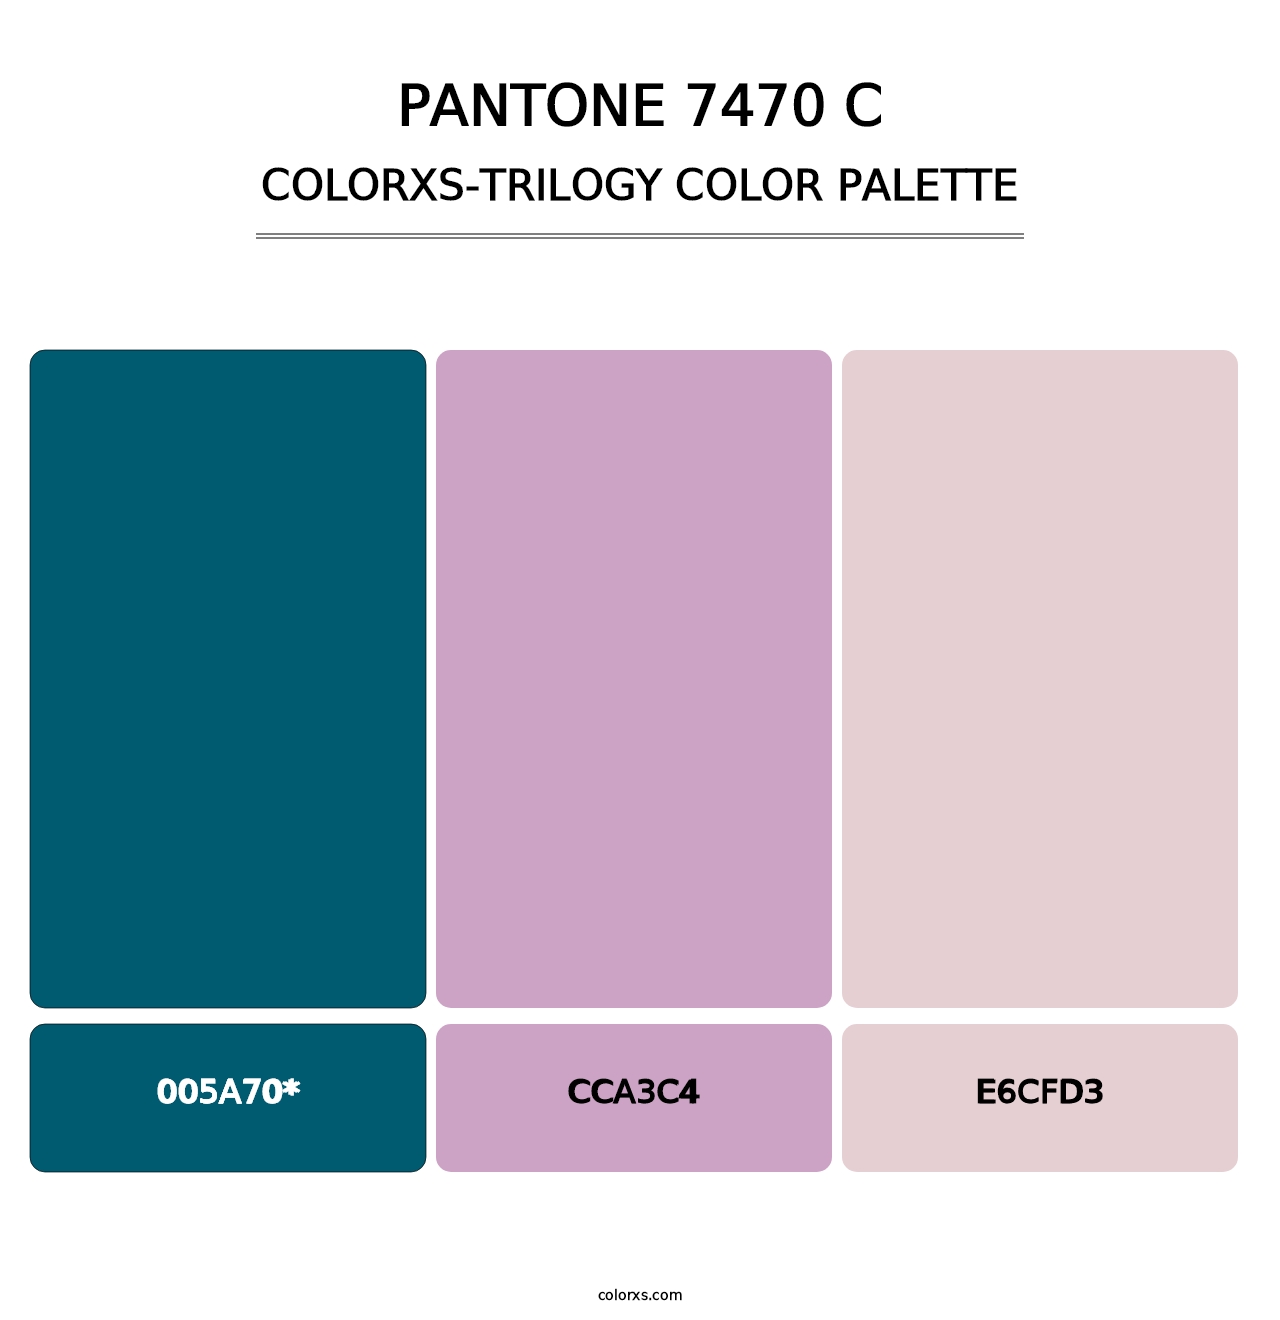 PANTONE 7470 C - Colorxs Trilogy Palette